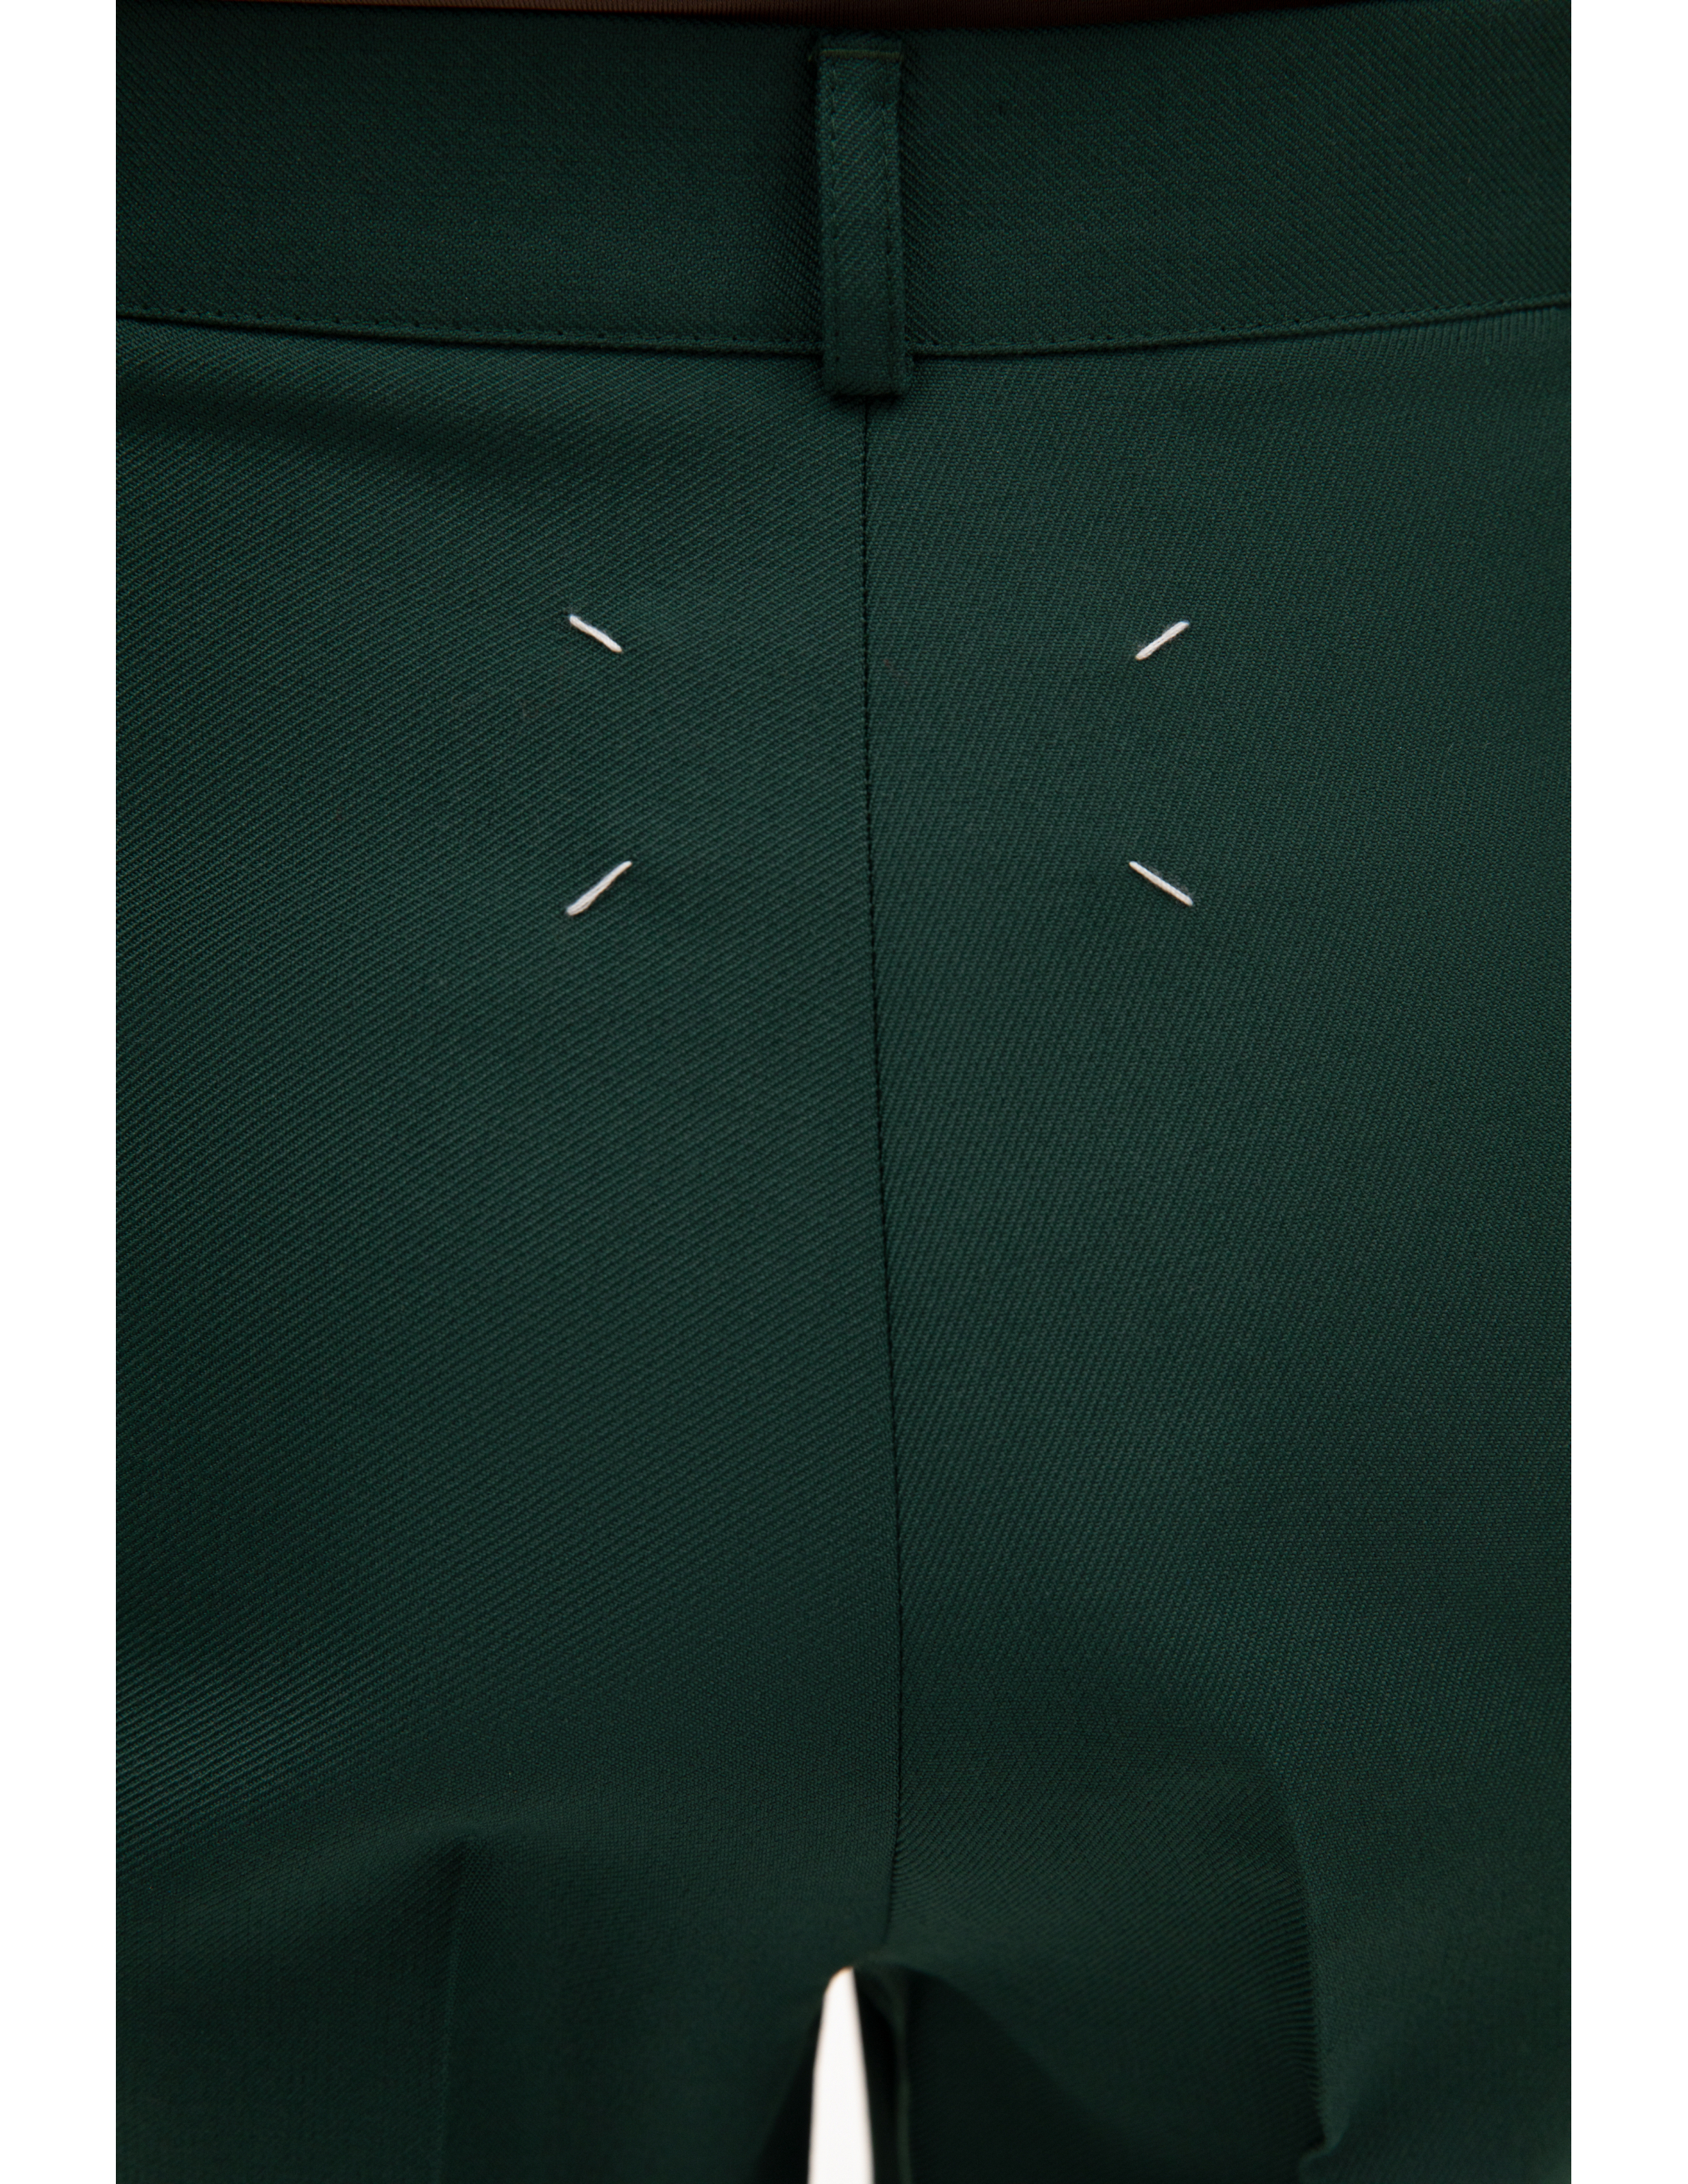 Зеленые брюки с высокой посадкой Maison Margiela S51KA0530/S53220/632, размер 44;42;40 S51KA0530/S53220/632 - фото 4